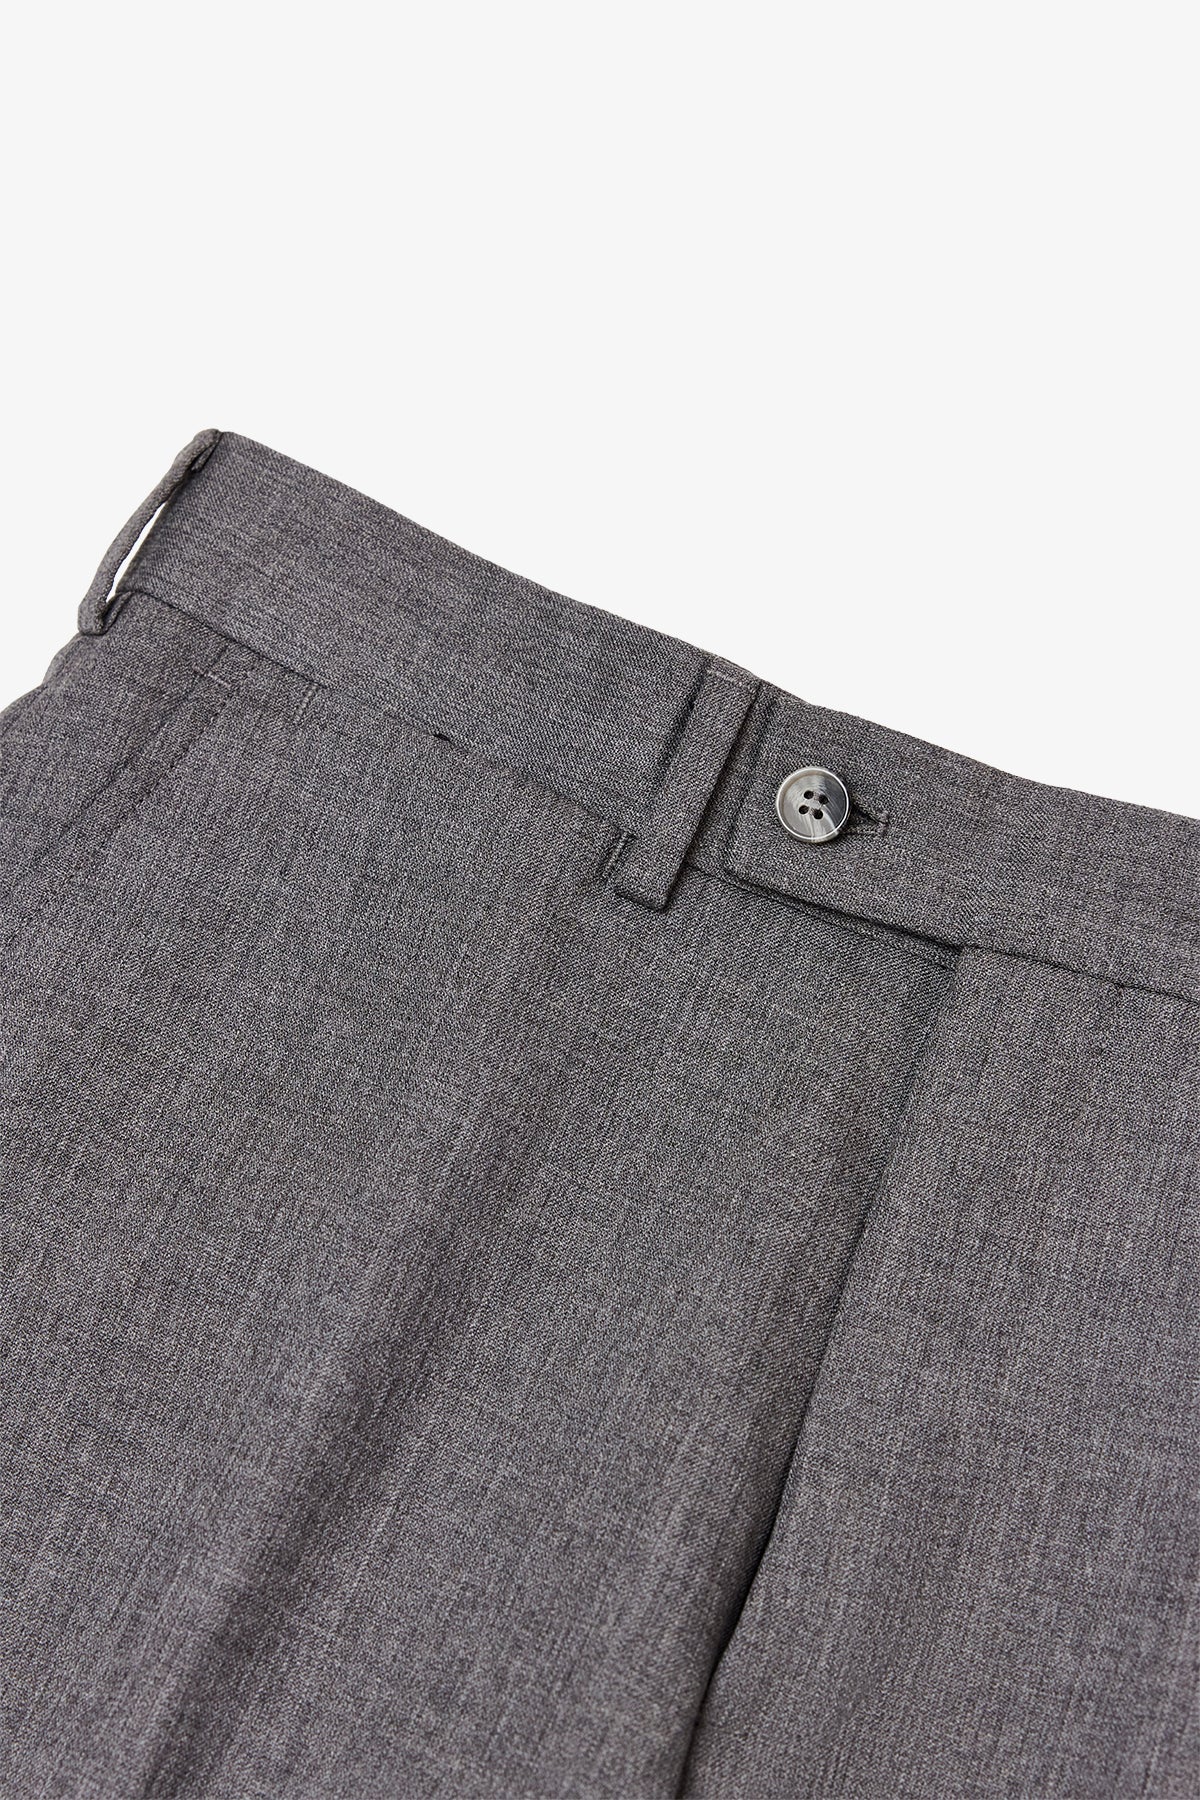 Adler - Mid Grey Trouser